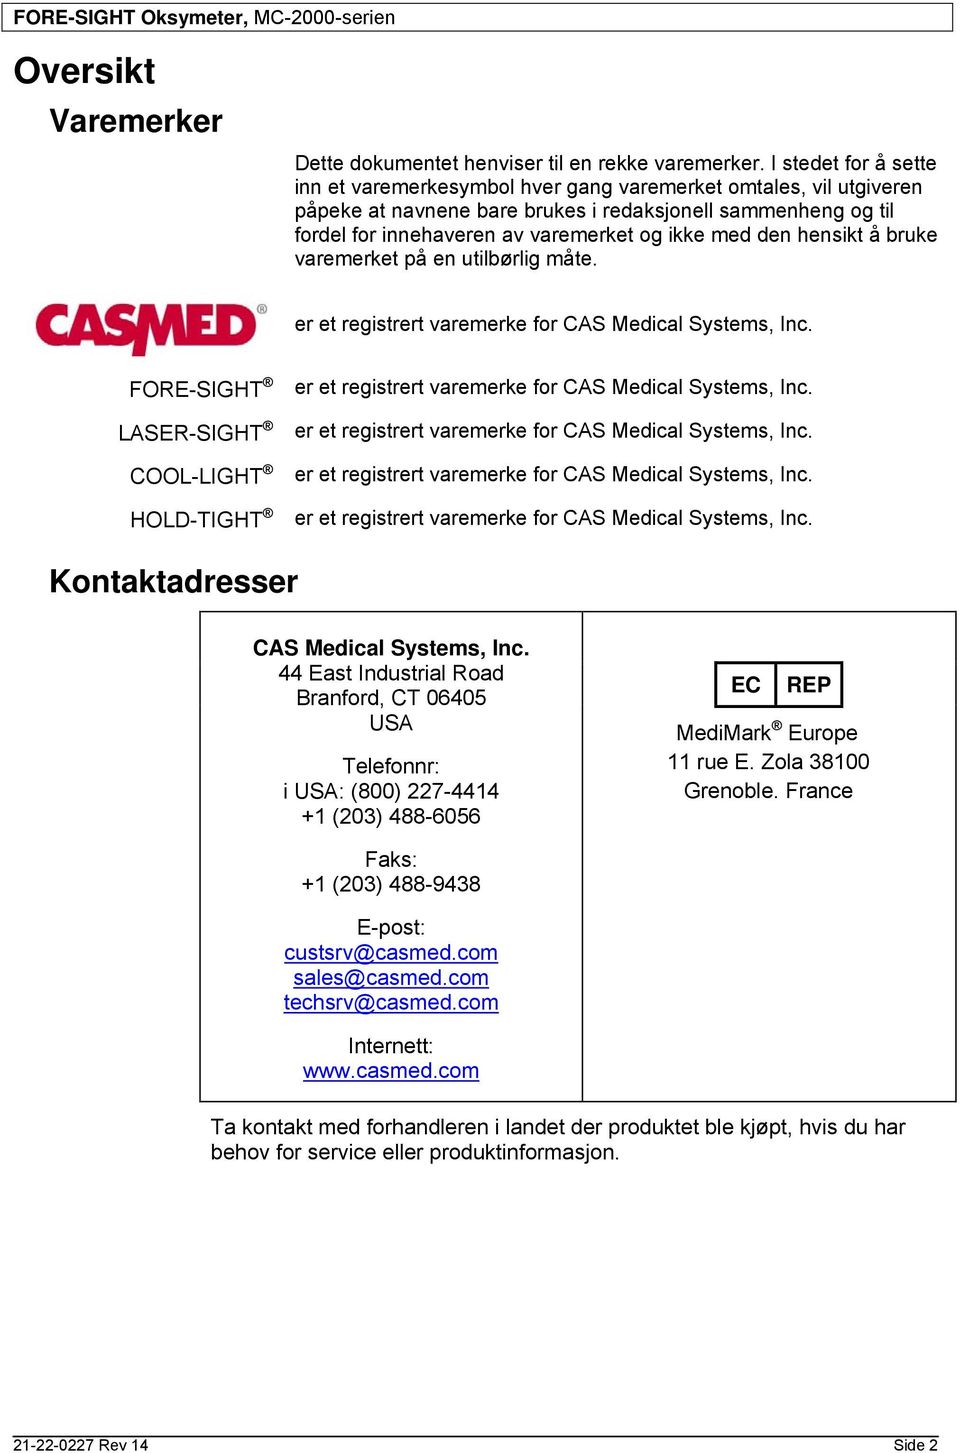 den hensikt å bruke varemerket på en utilbørlig måte. er et registrert varemerke for CAS Medical Systems, Inc.